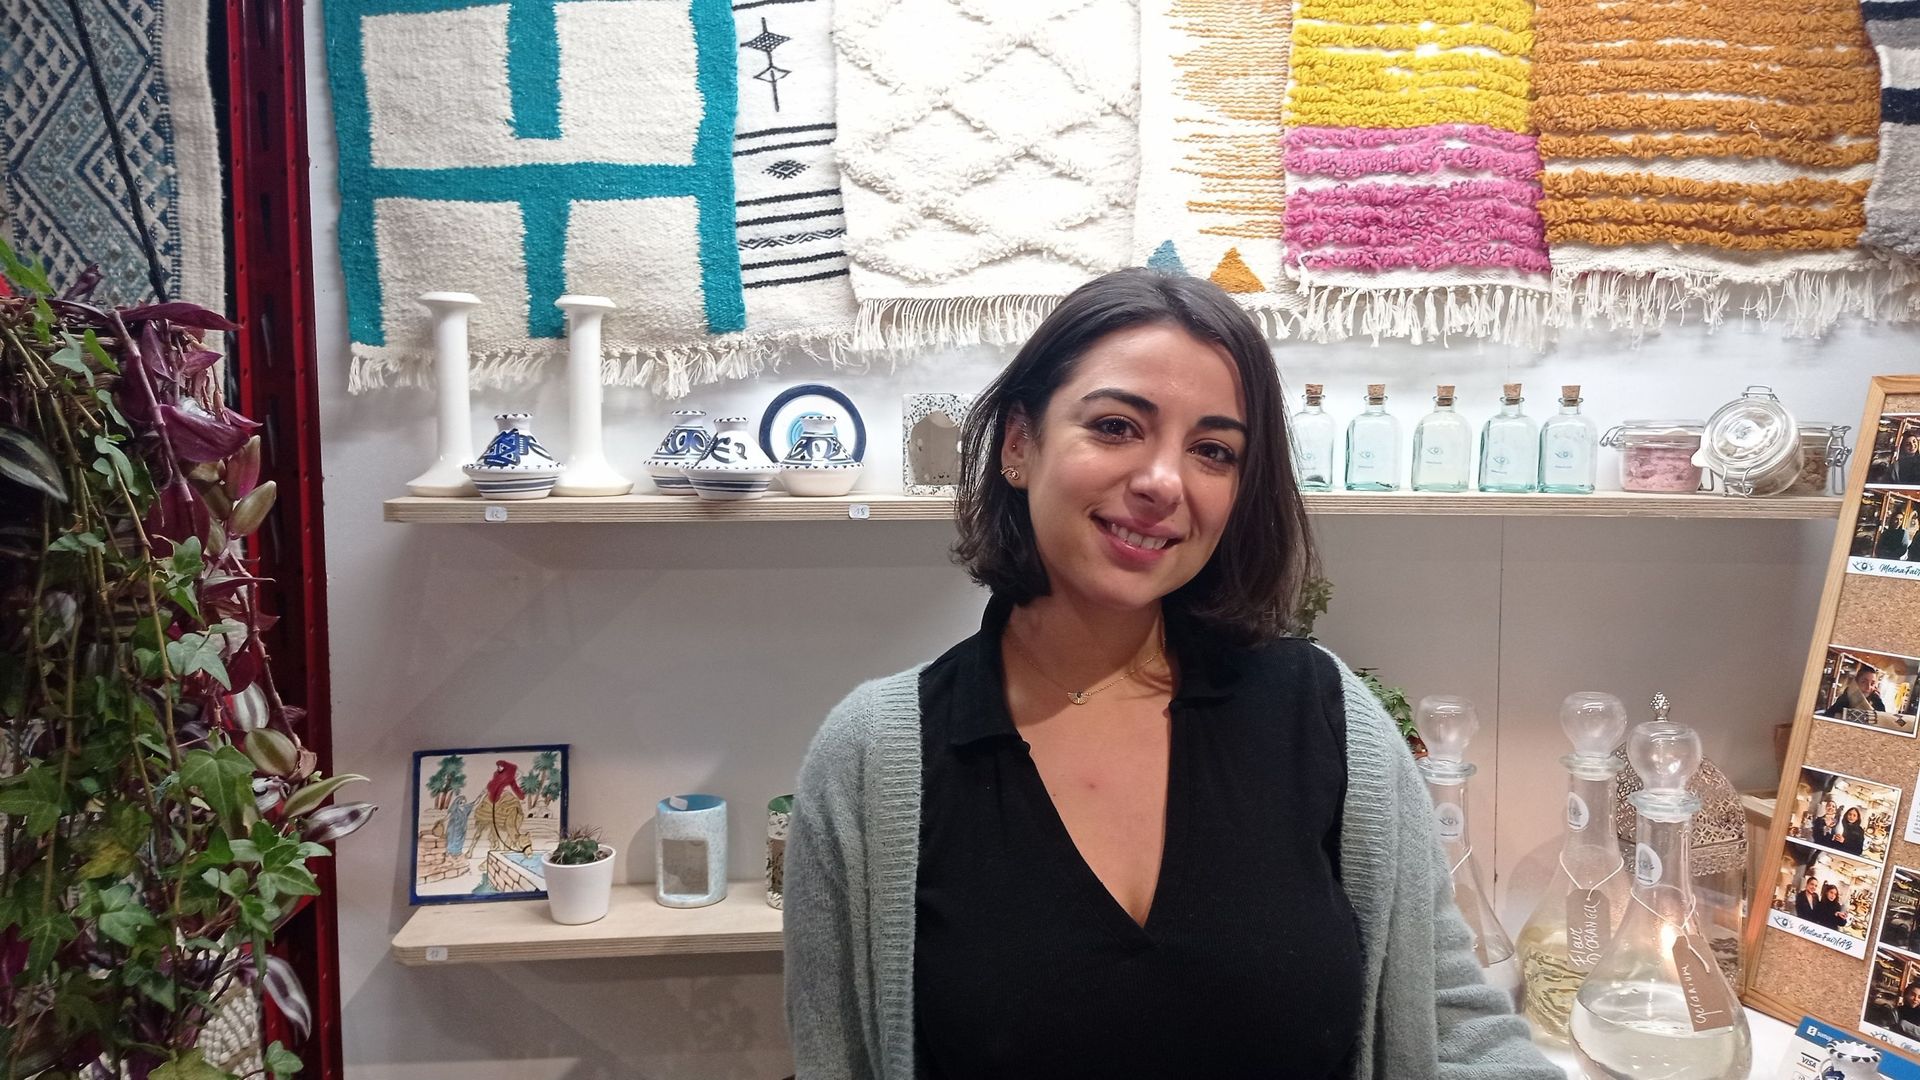 Ons Bouslama est une entrepreneuse belgo-tunisienne installée à Bruxelles. Son objectif est de valoriser l’artisanat tunisien dans son projet Médina FairLab.